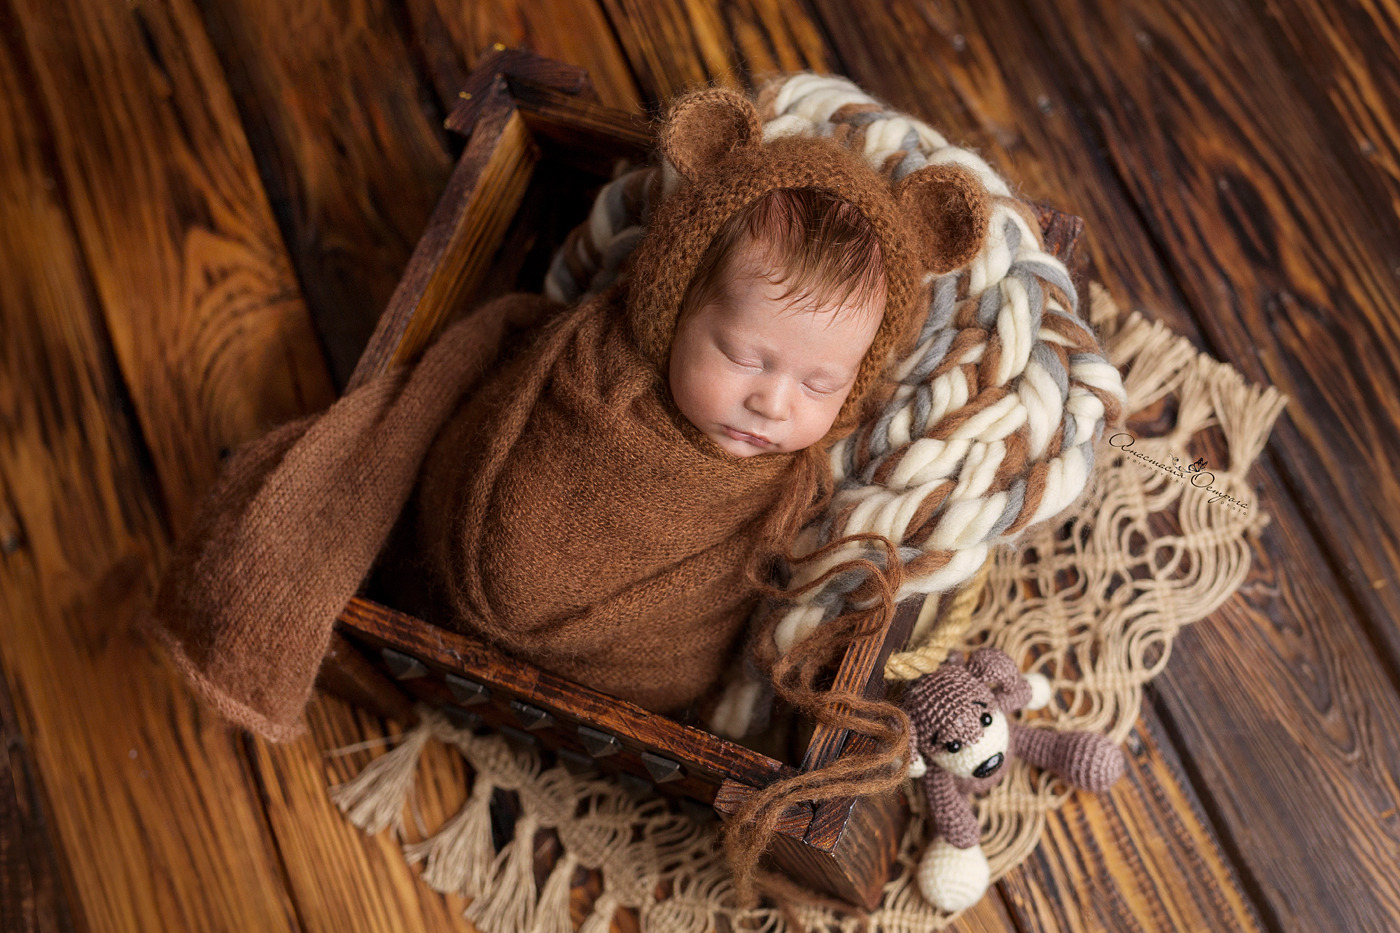 Фотосессия новорождённого малыша | Фотограф Анастасия Острога | foto.by фото.бай